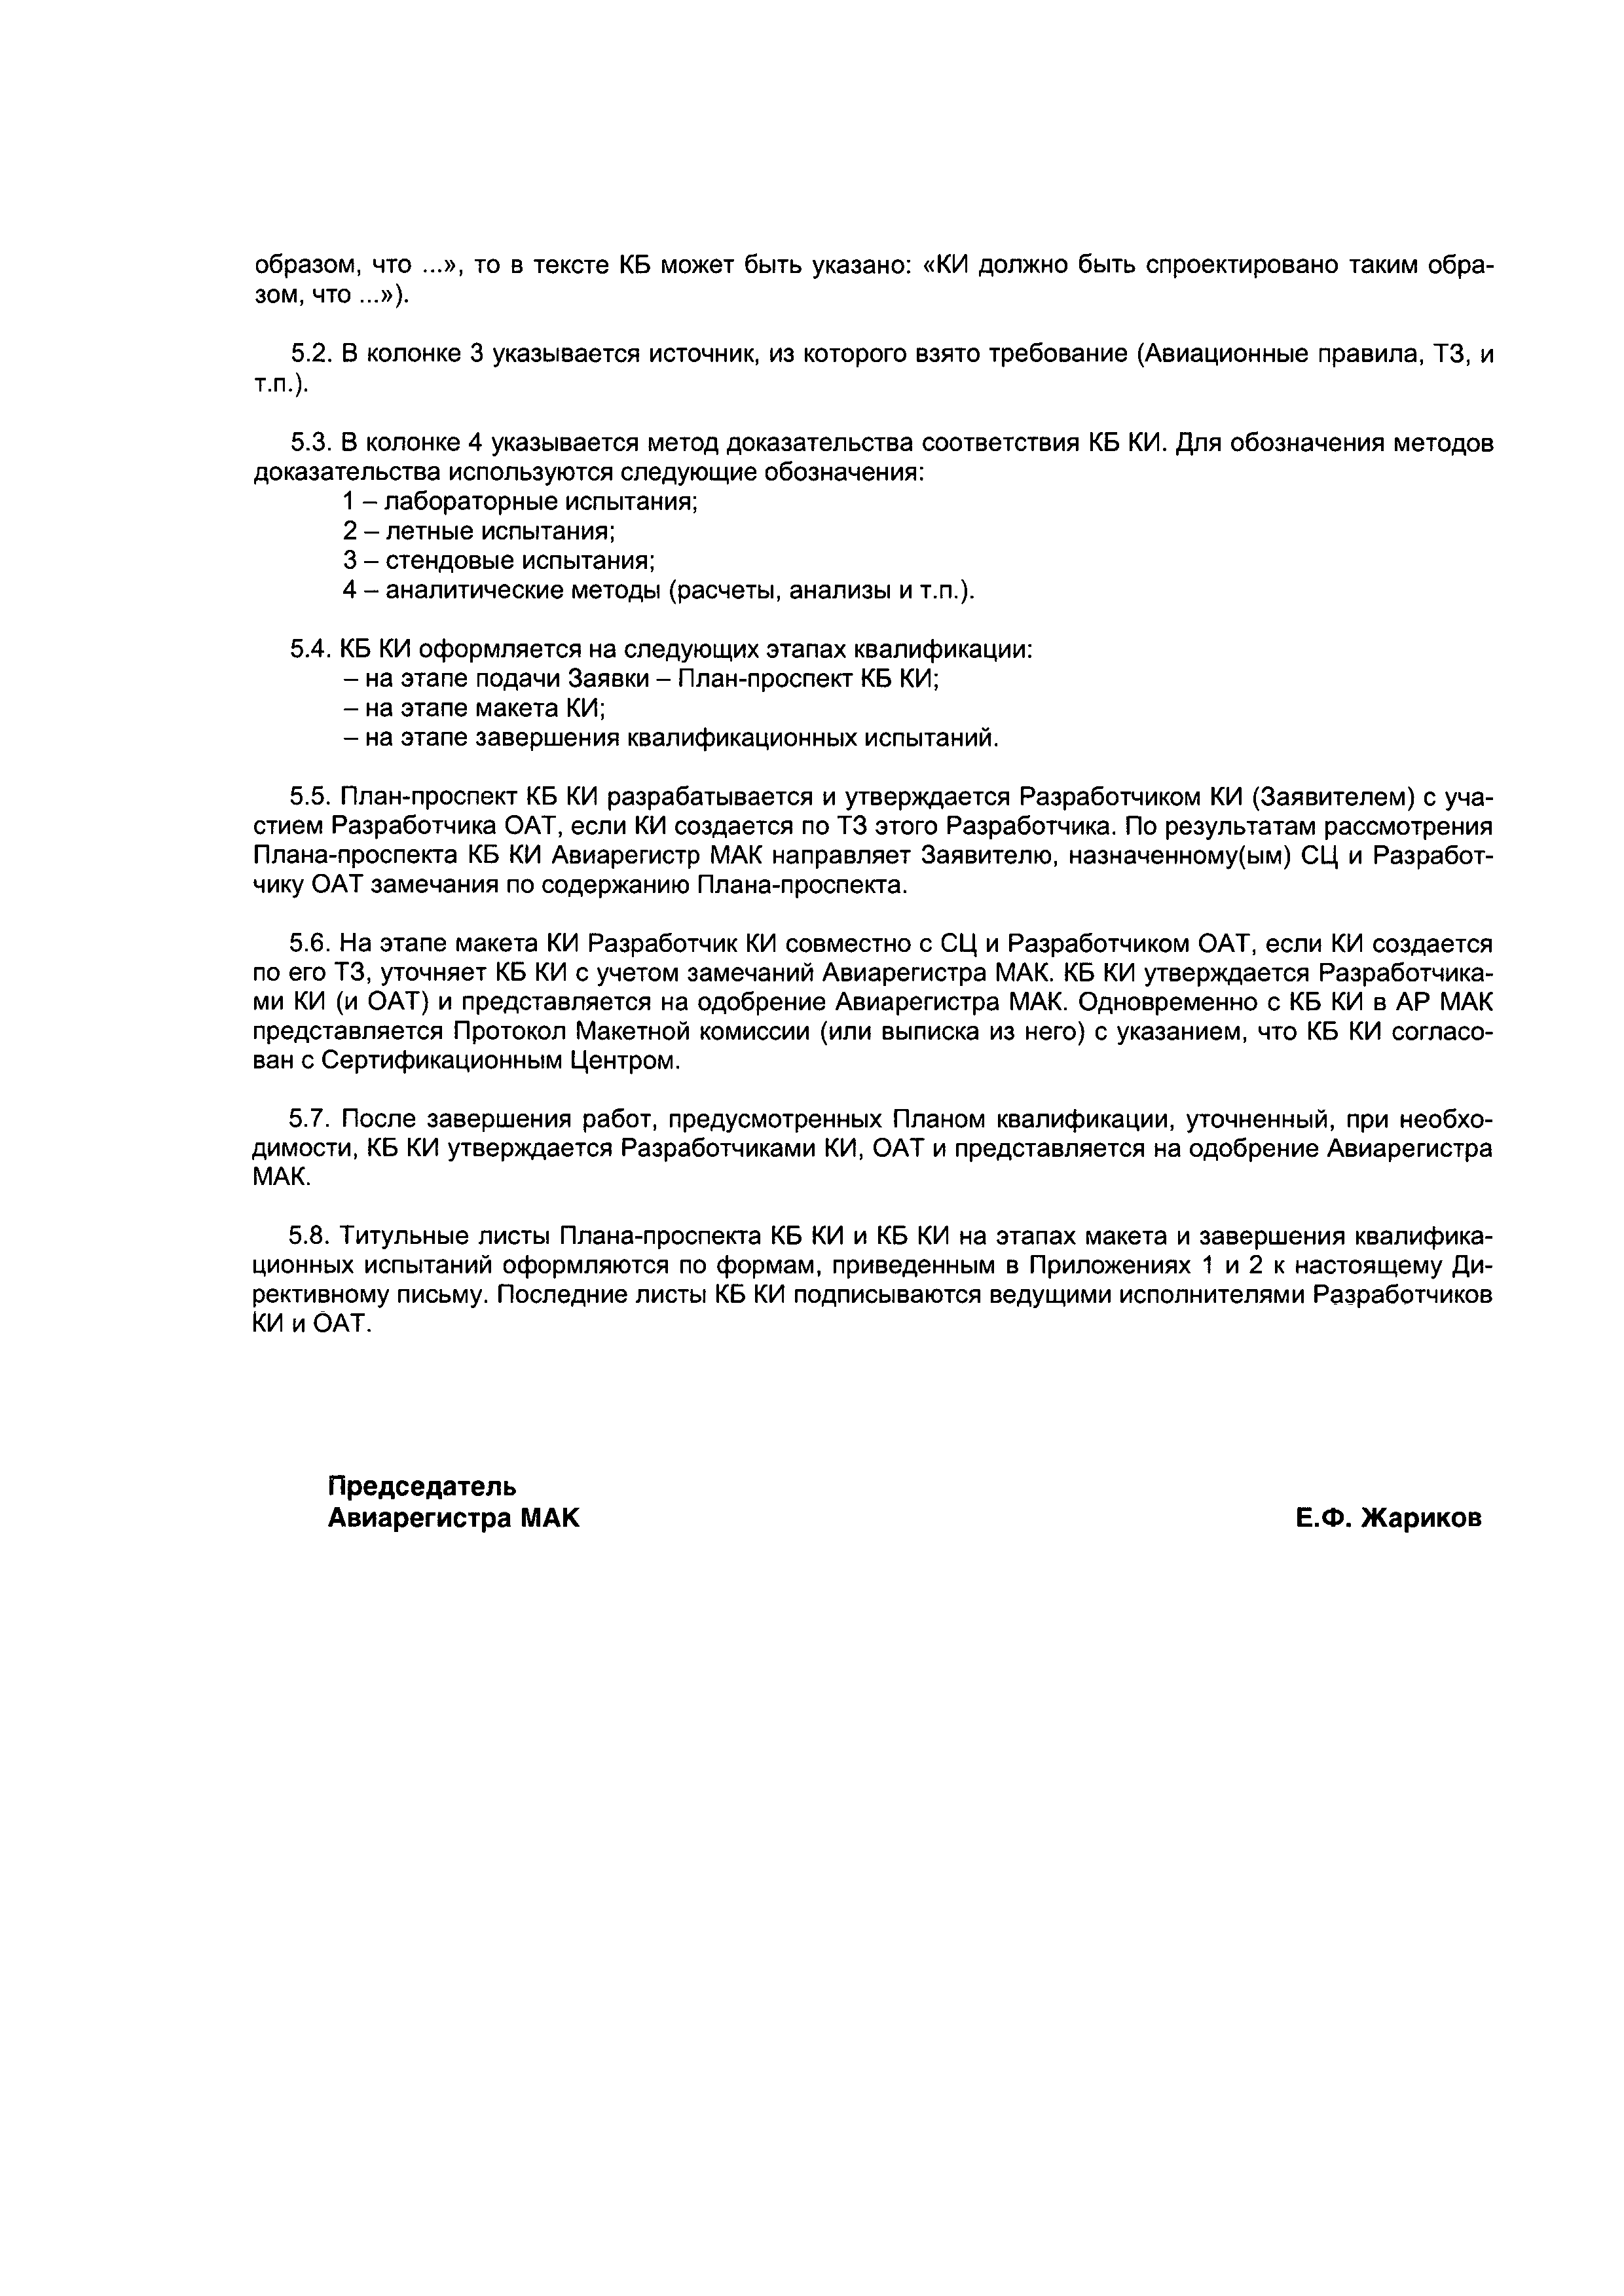 Директивное письмо 02-2002